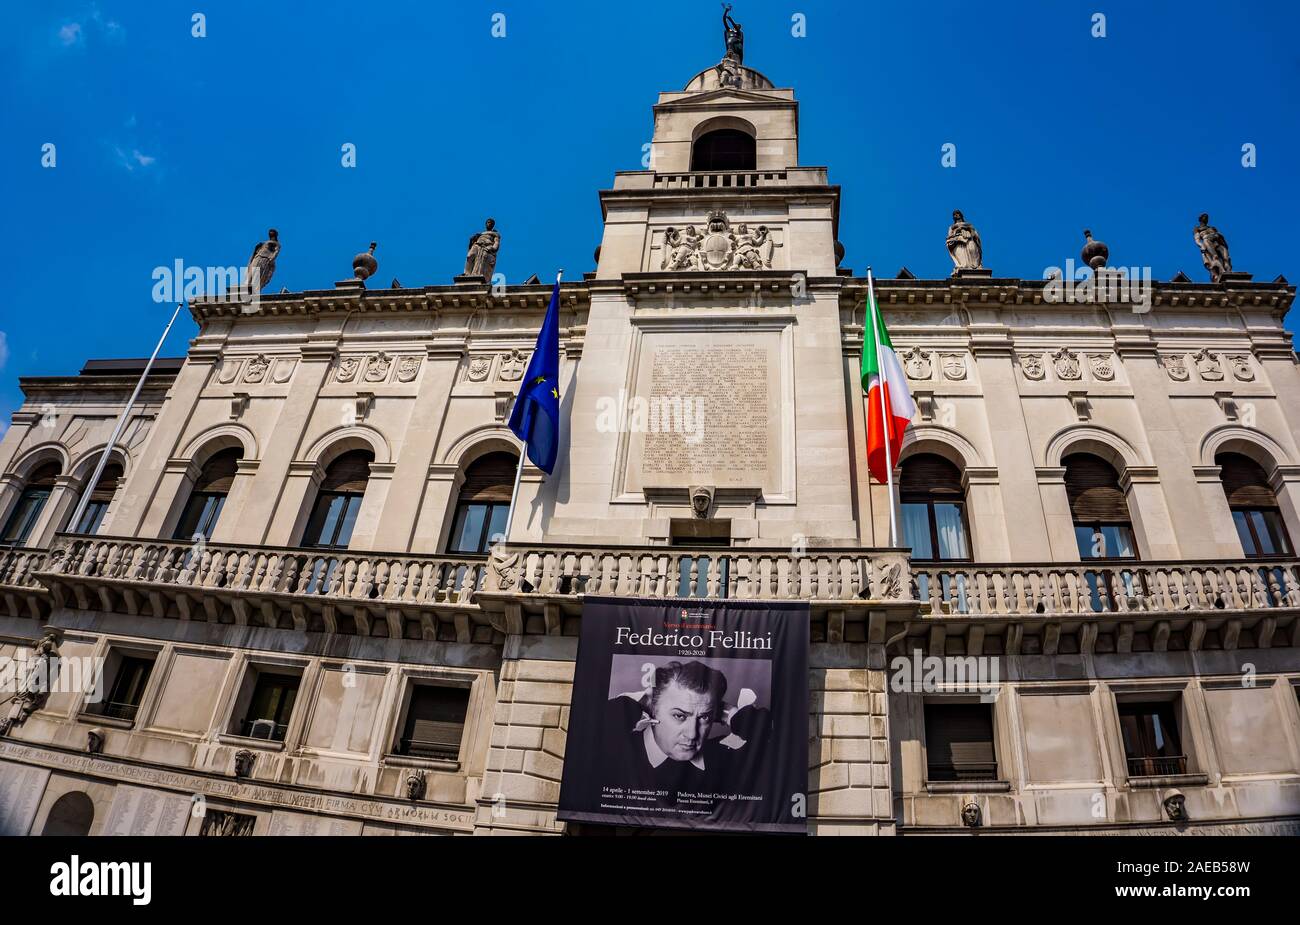 PADUA, Italia - 25 de mayo de 2019: Cartel para exposición conmemora el centenario del nacimiento de Federico Fellini en Padua, Italia. Fellini, uno de Ital Foto de stock